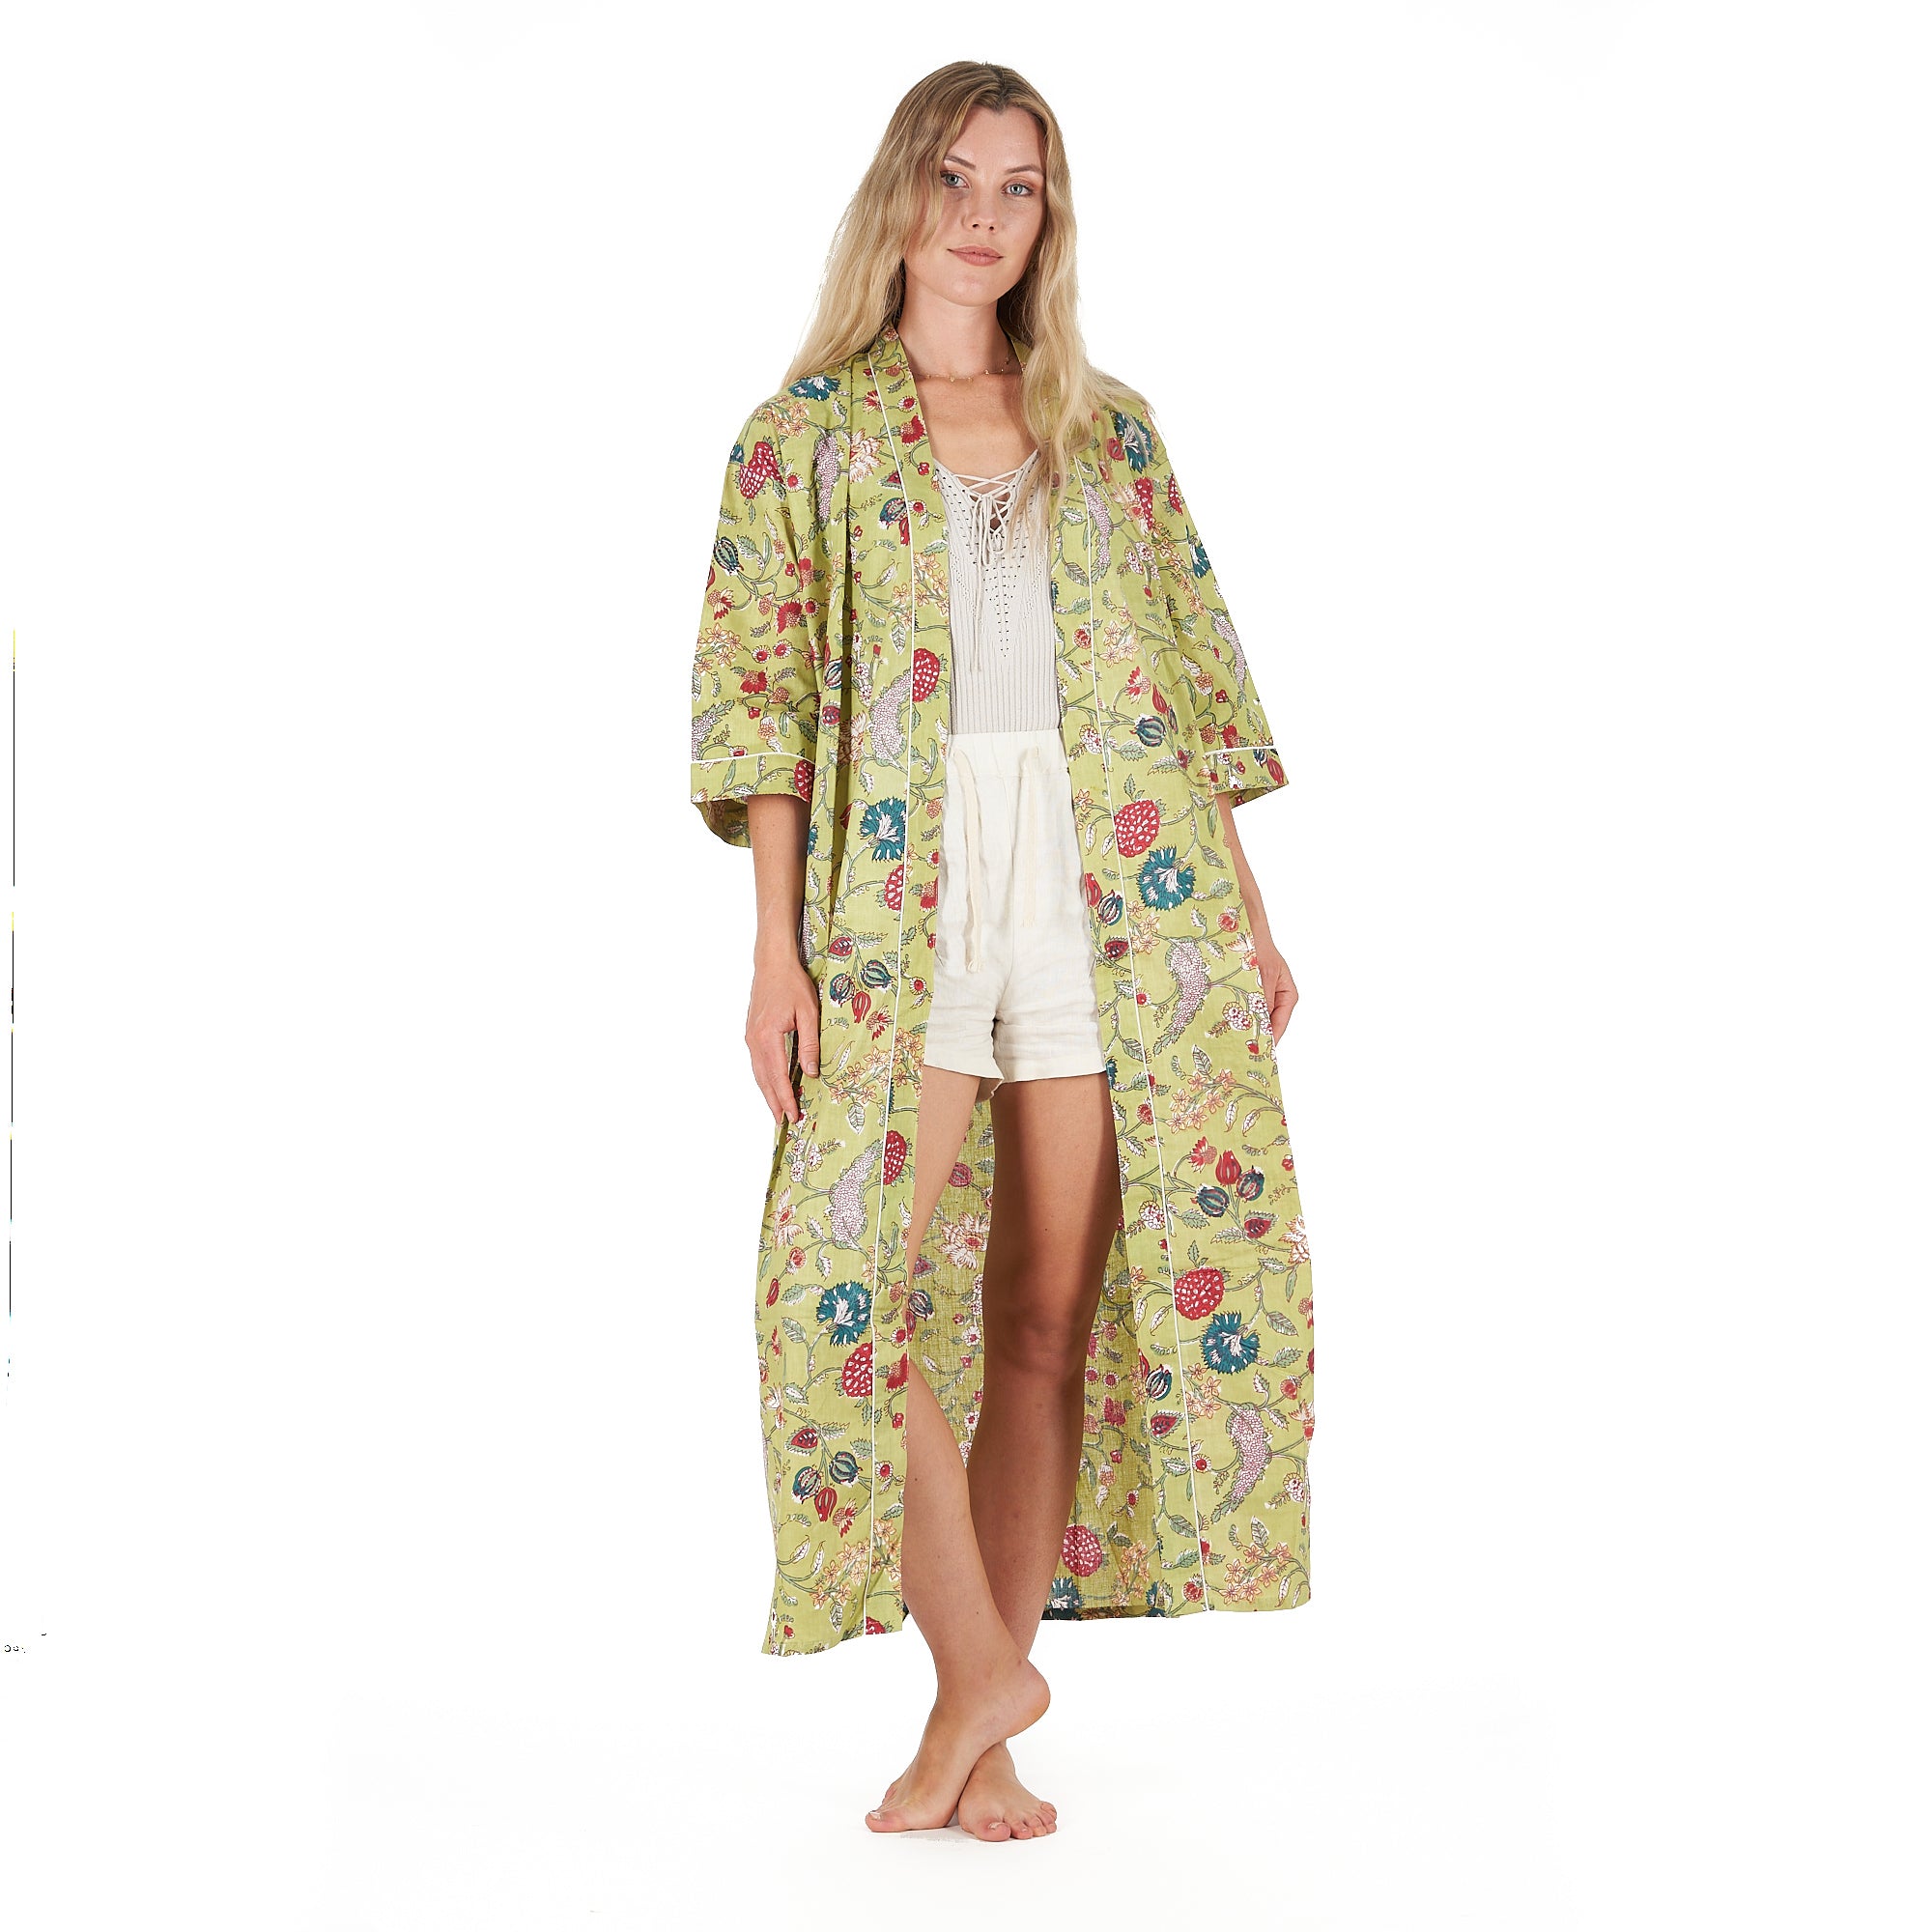 'Spring Bliss' 100% Cotton Kimono Robe